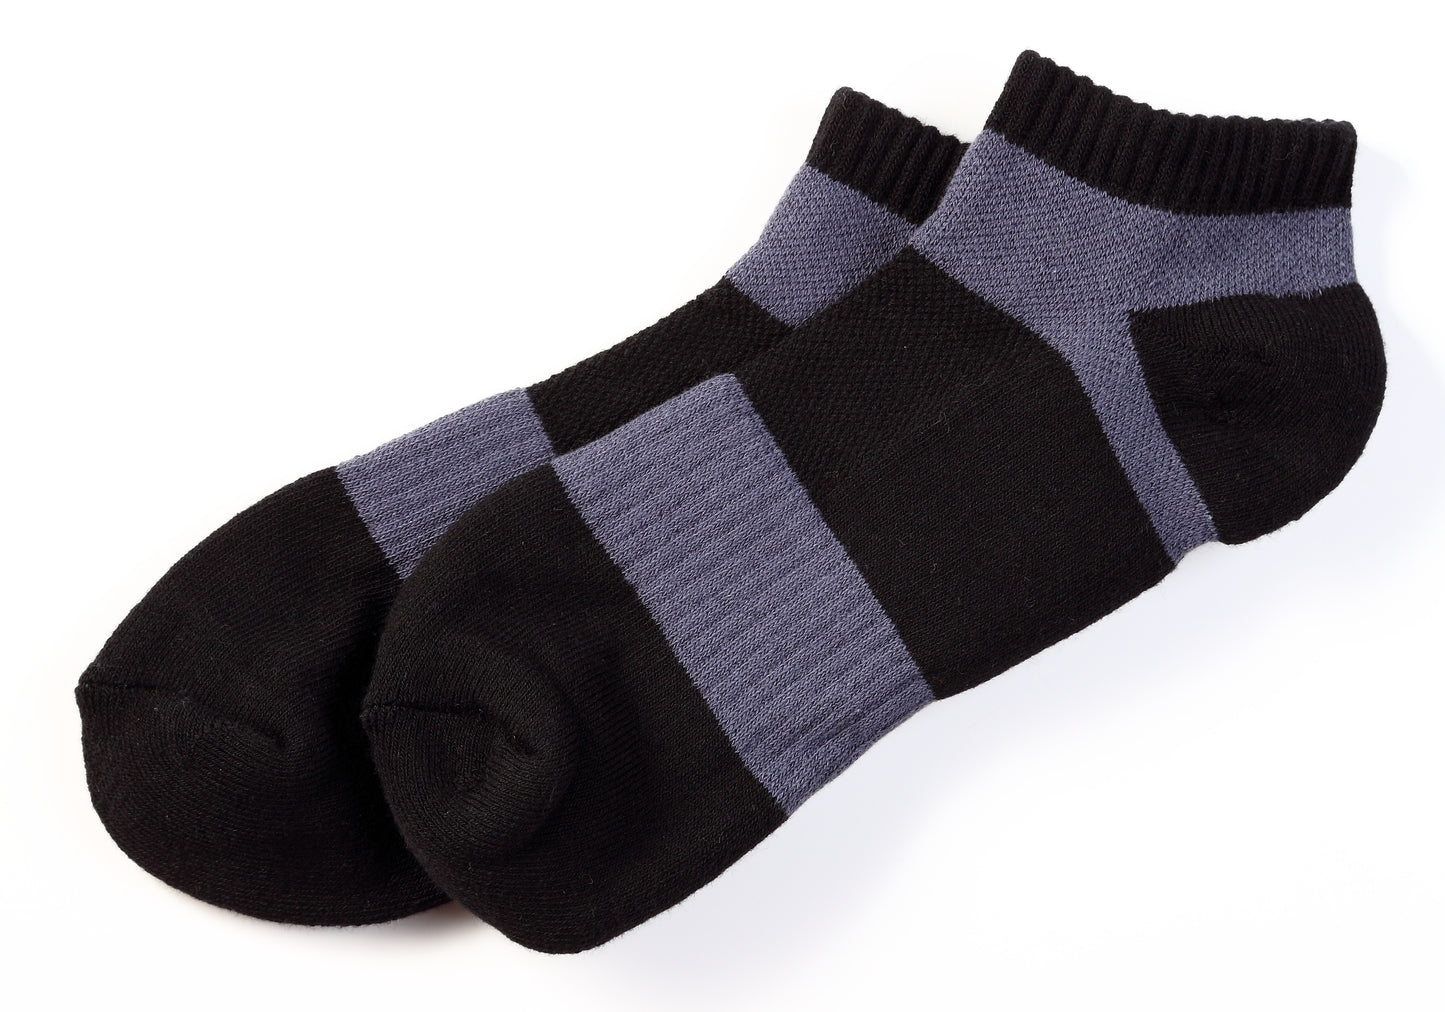 船型運動襪(黑/白/灰/黑-鮮綠/黑-橘/黑-灰/白-寶藍/亮黃-深綠)